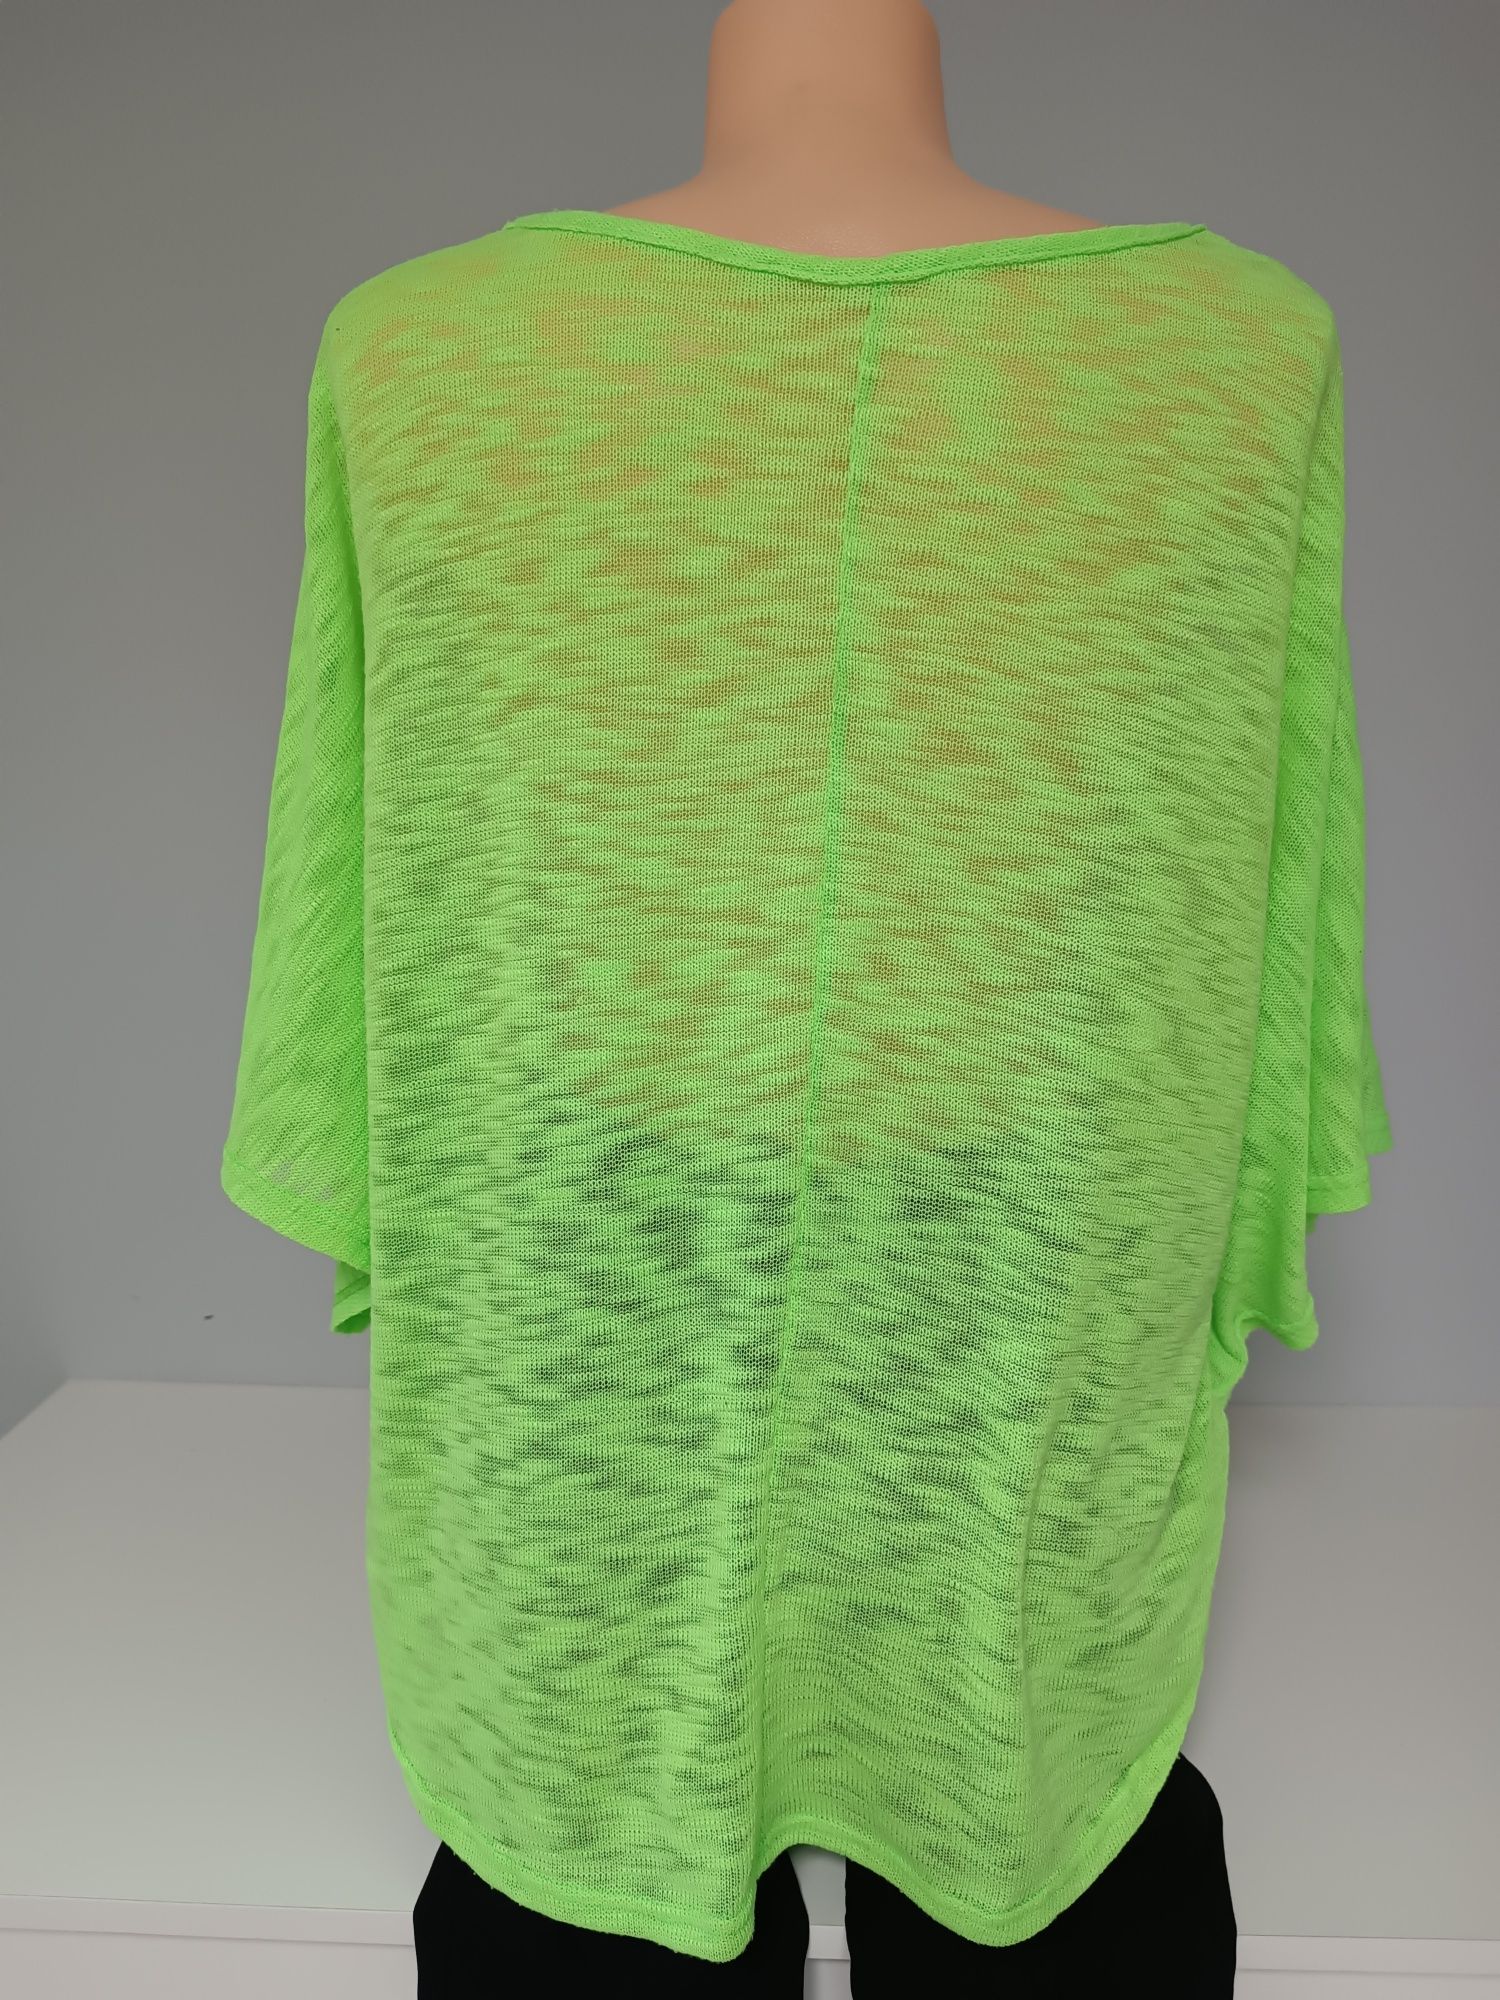 Śliczna bluzka neonowa zieleń typu nietoperz rozmiar uniwersalny